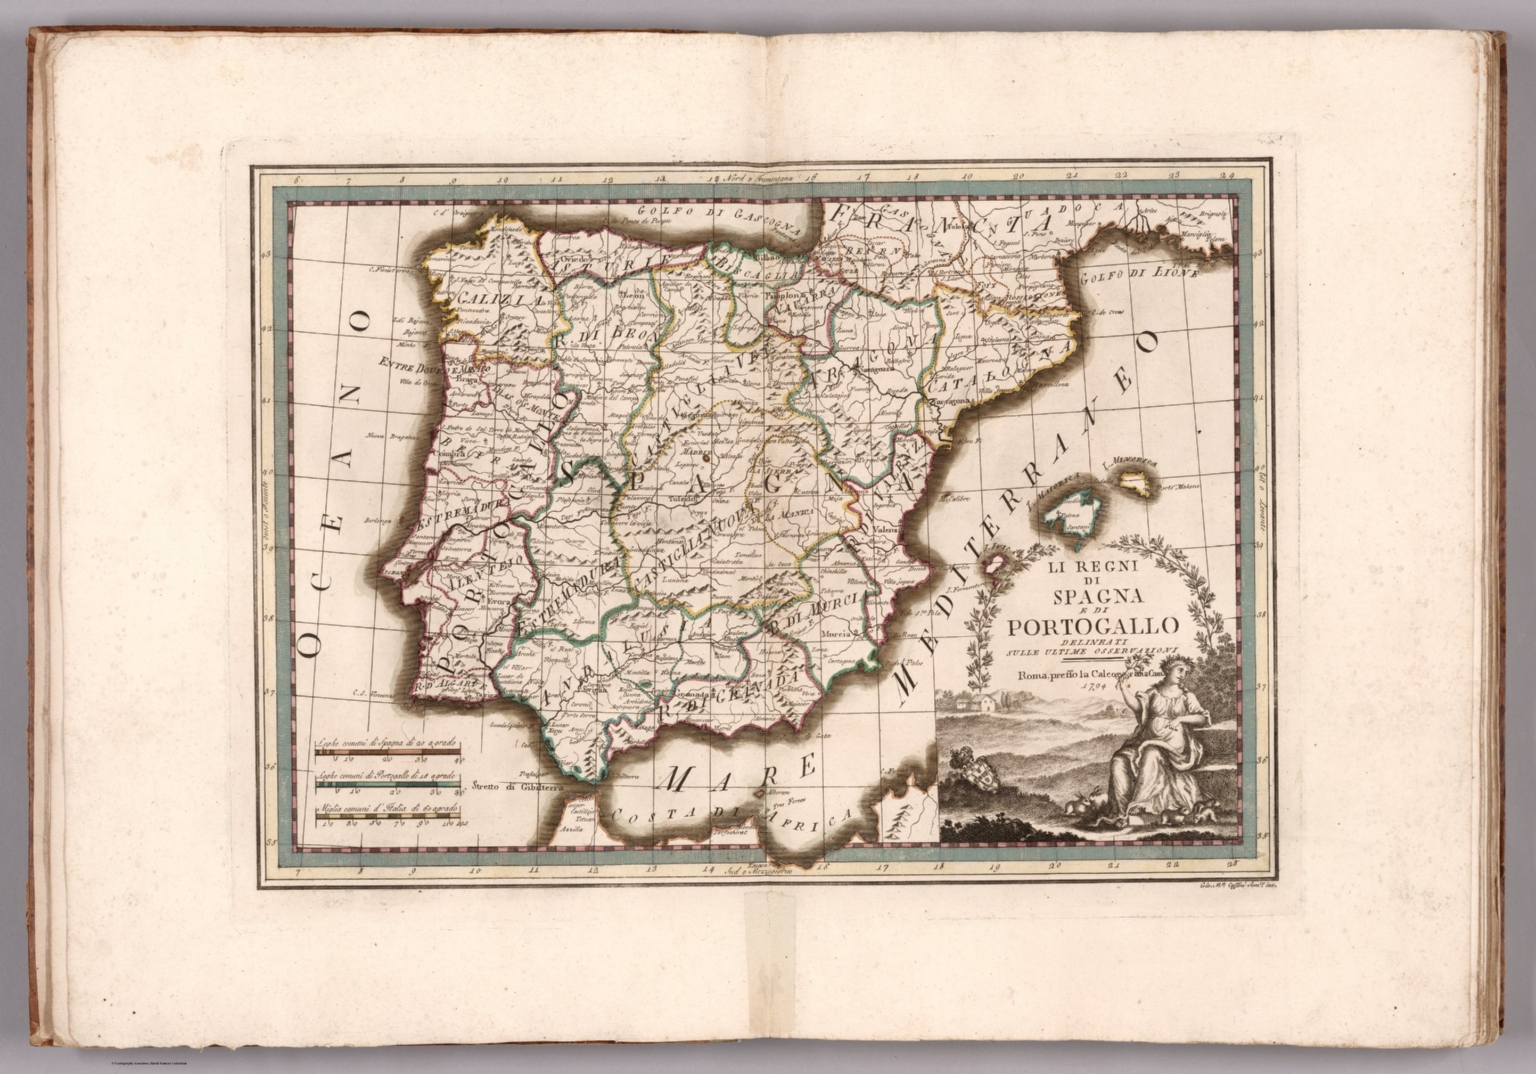 3 Li Regni Di Spagna E Di Portogallo David Rumsey Historical Map Collection